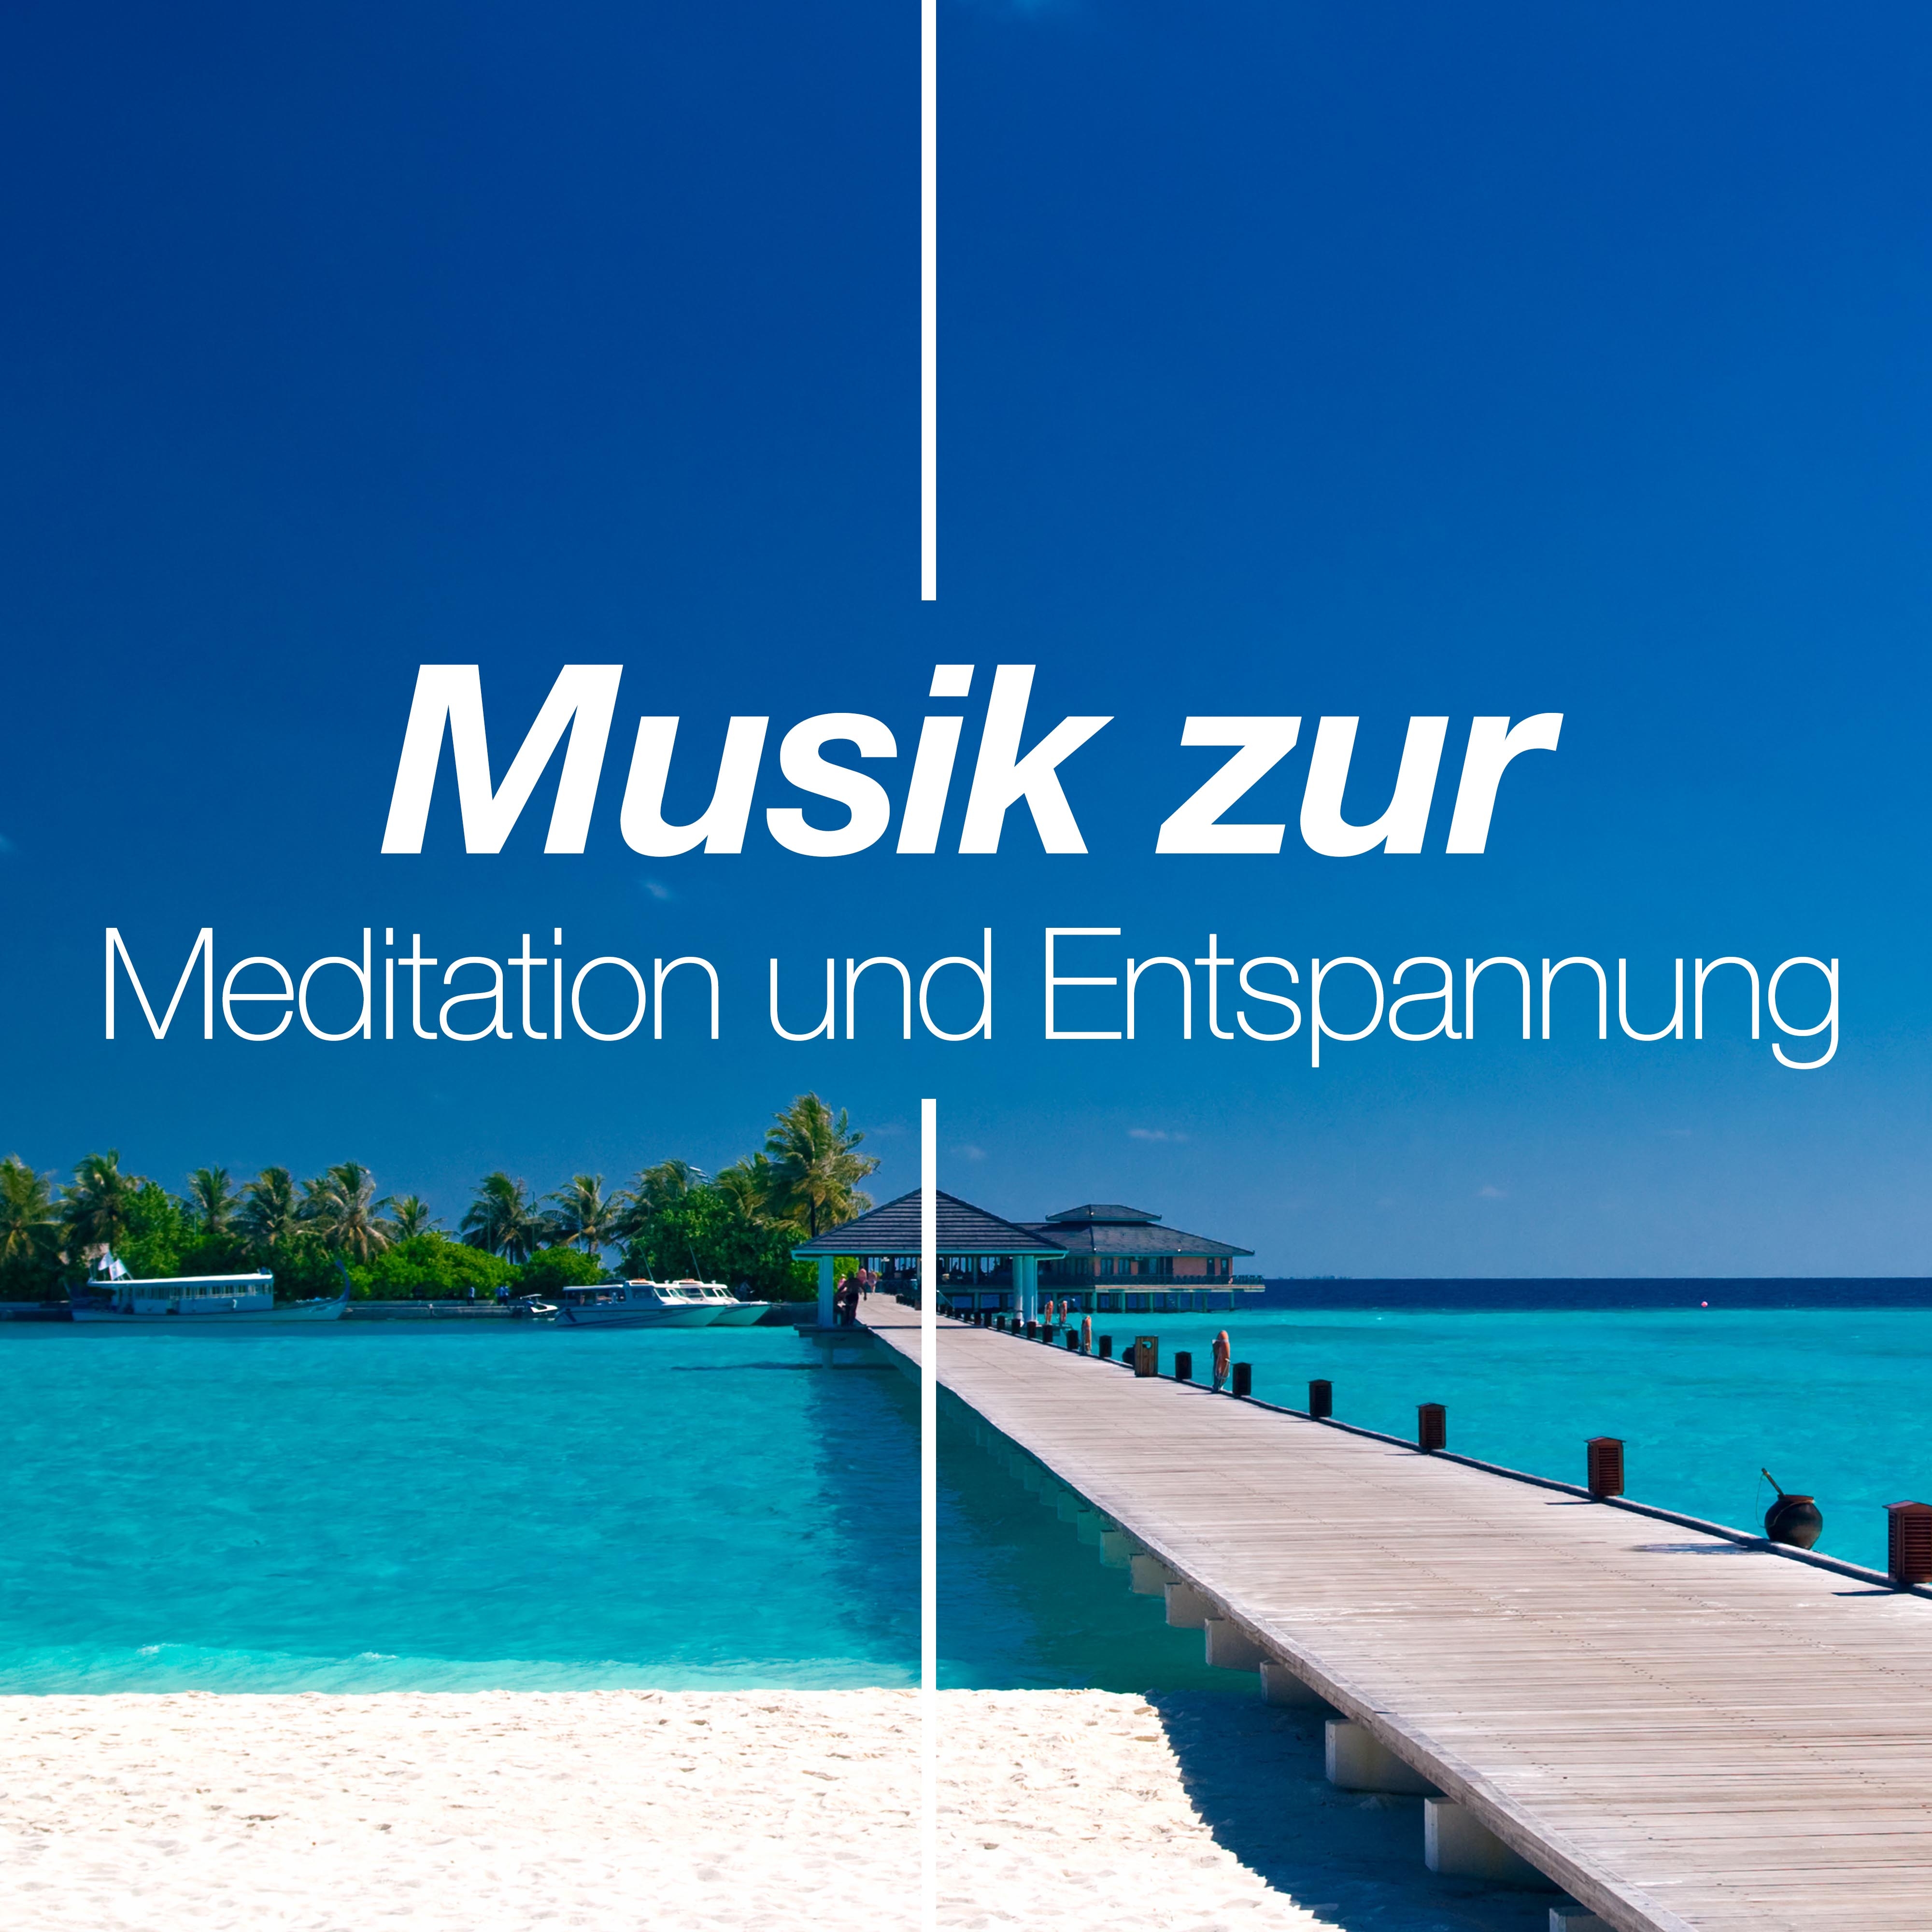 Musik zur Meditation und Entspannung: Naturger usche, Meeresrauschen fü r Entspannungstechniken, Frieden, Ruhe, Beruhigen und Gelassenheit